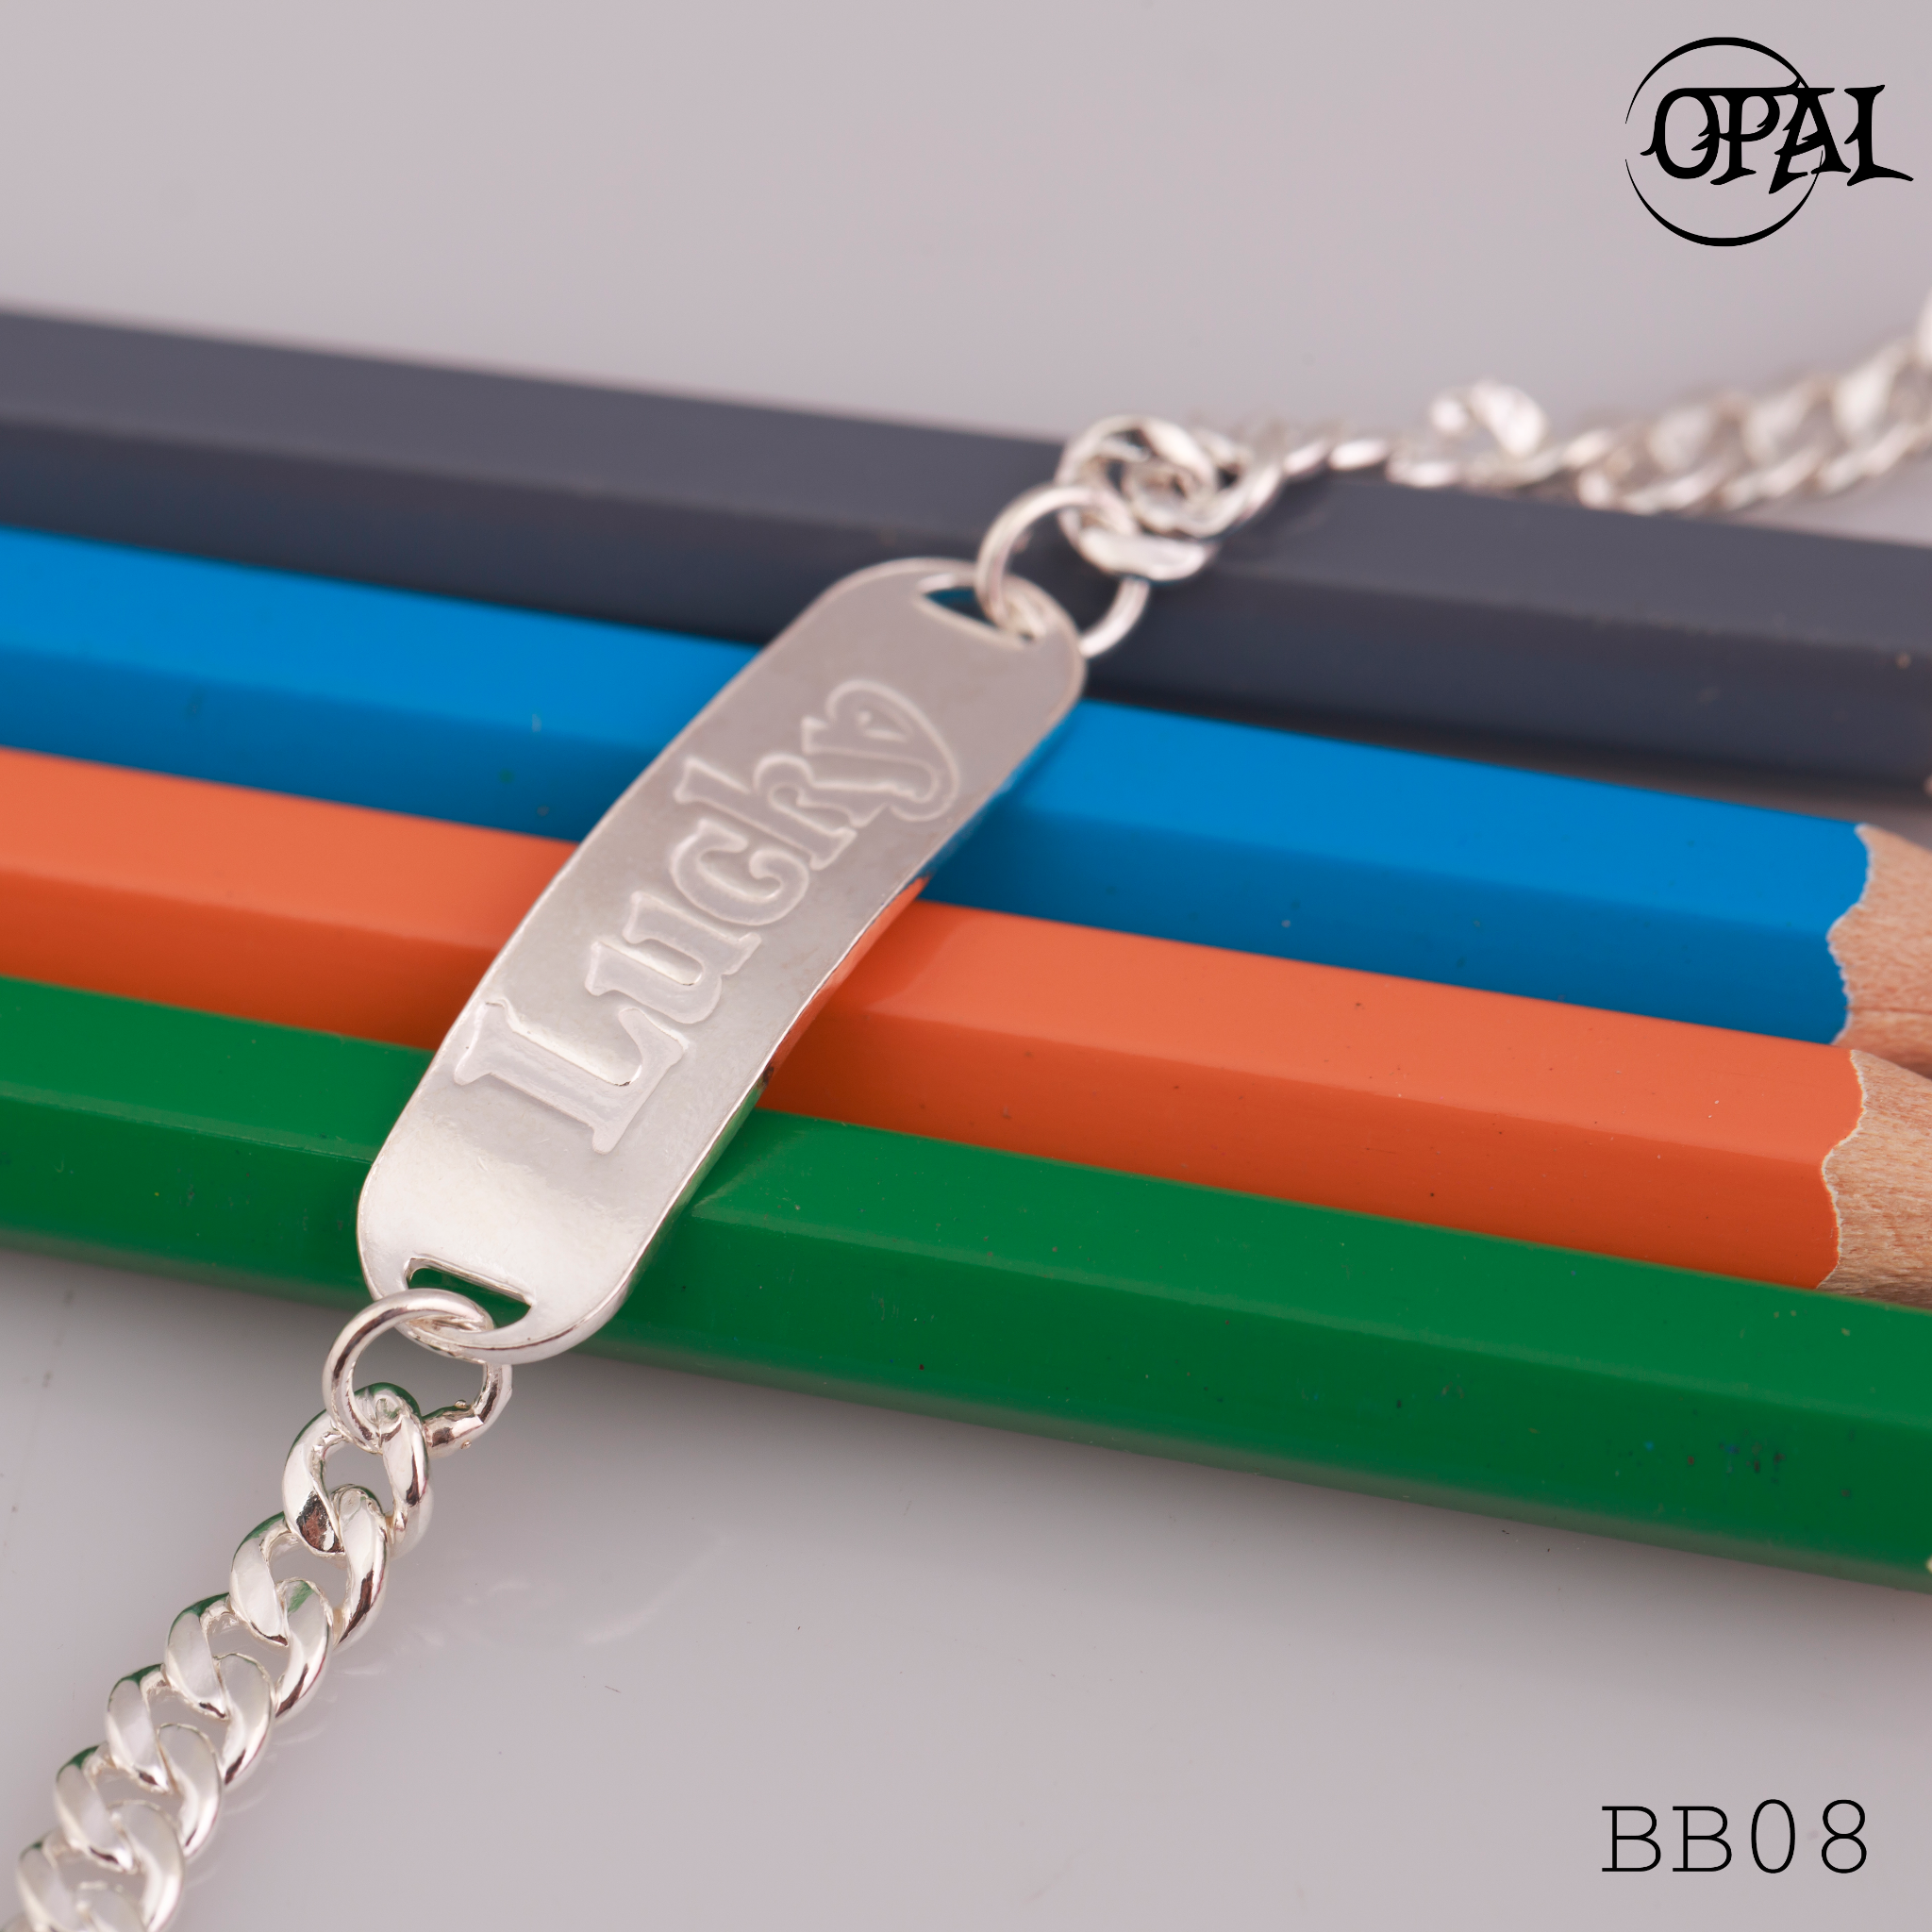  BB01-10 - Lắc tay bạc cho bé Opal 